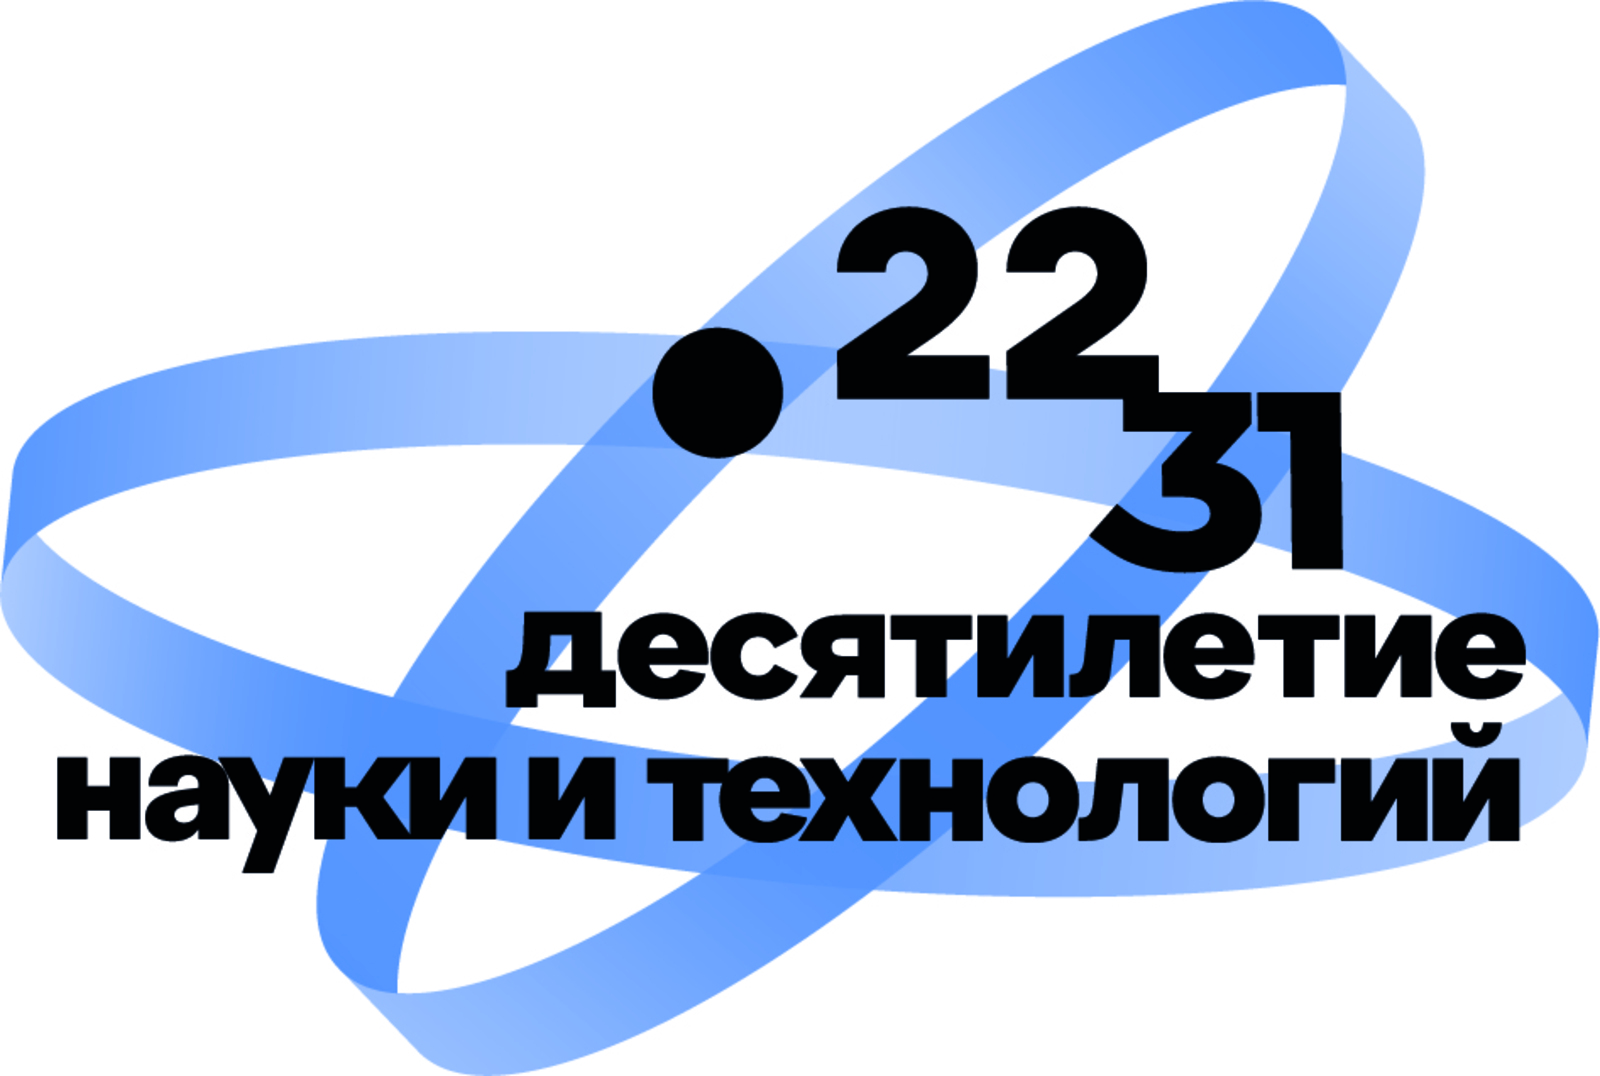 2022–2031 годы в Российской Федерации объявлены Десятилетием науки и технологий.